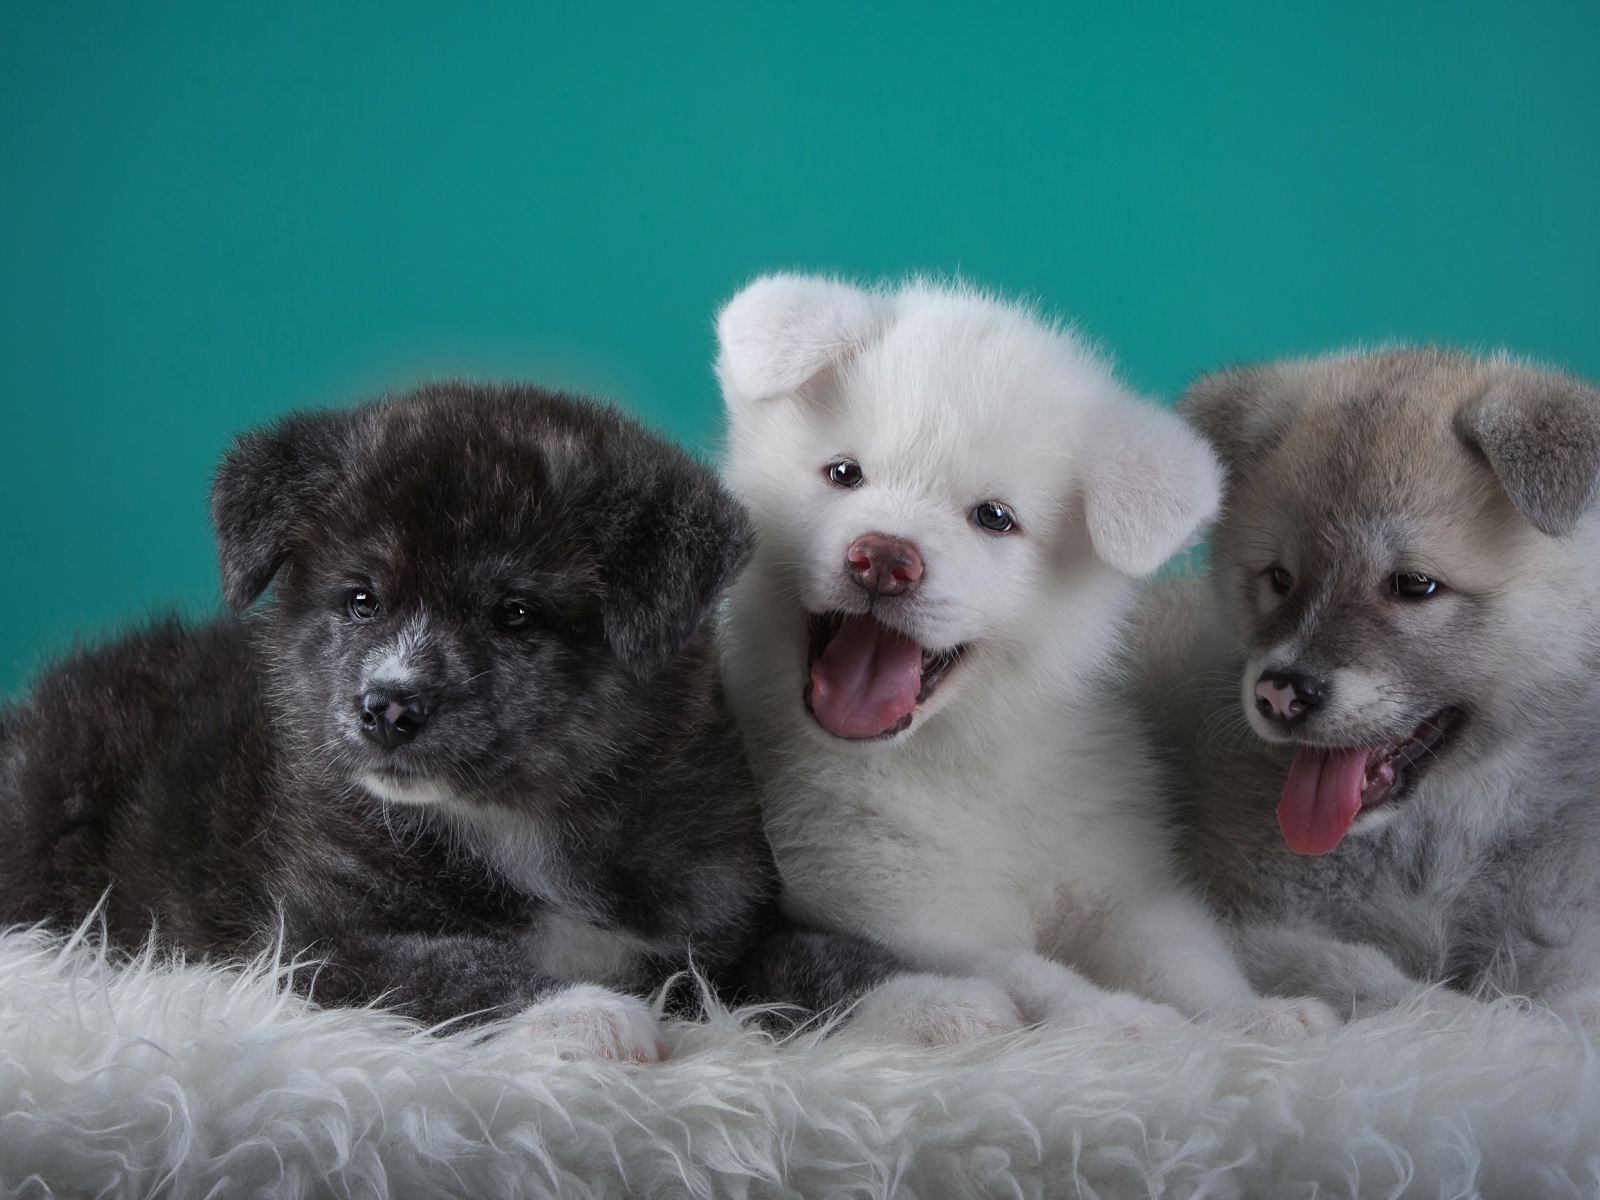 Три забавных щенка Акита-ину на зеленом фоне